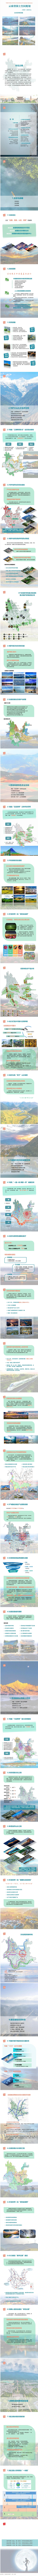 云南省国土空间总体规划公示